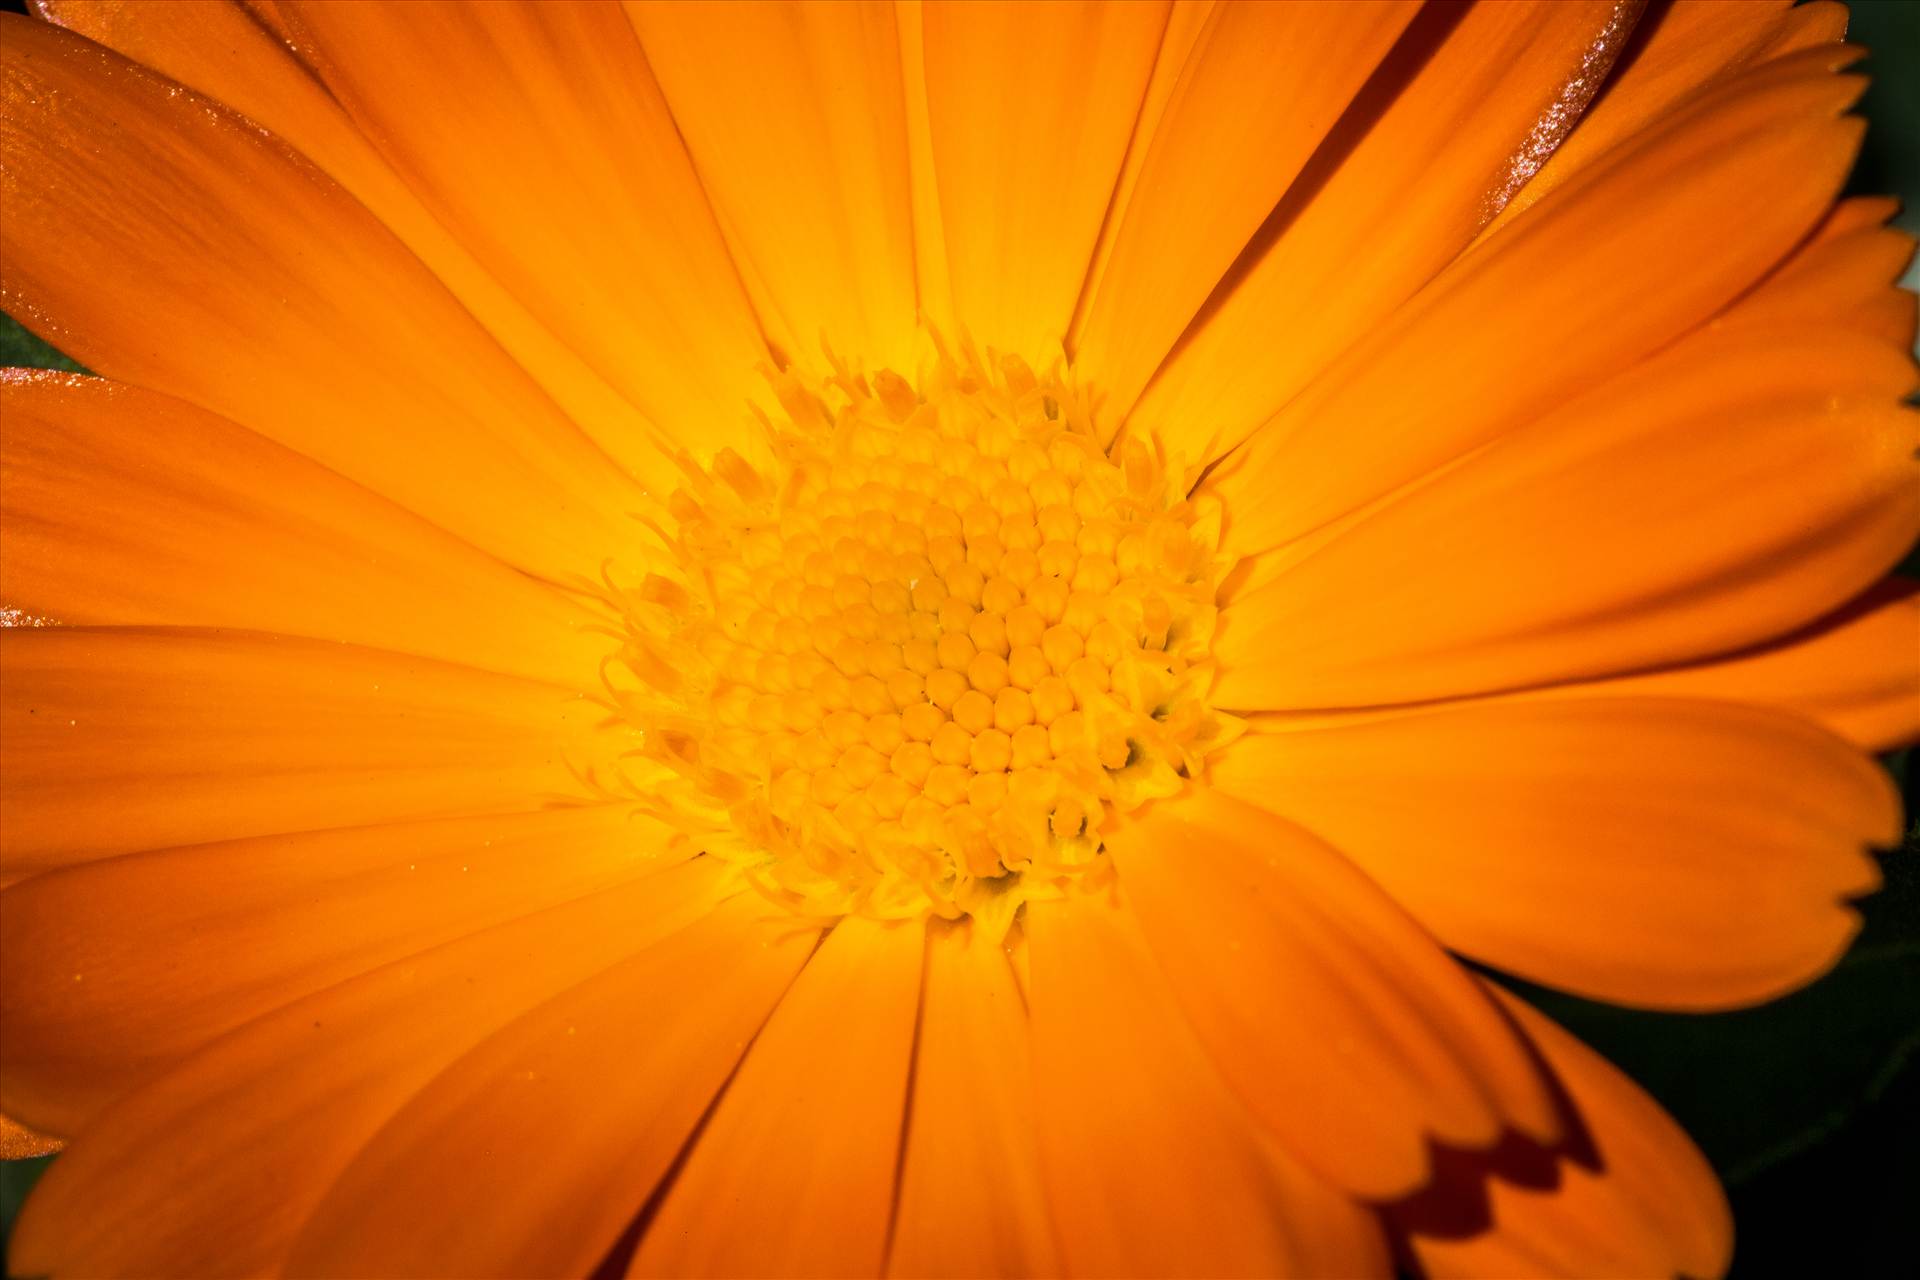 Orange Daisy - A spring daisy in Langley, Washington by Scott Smith Photos